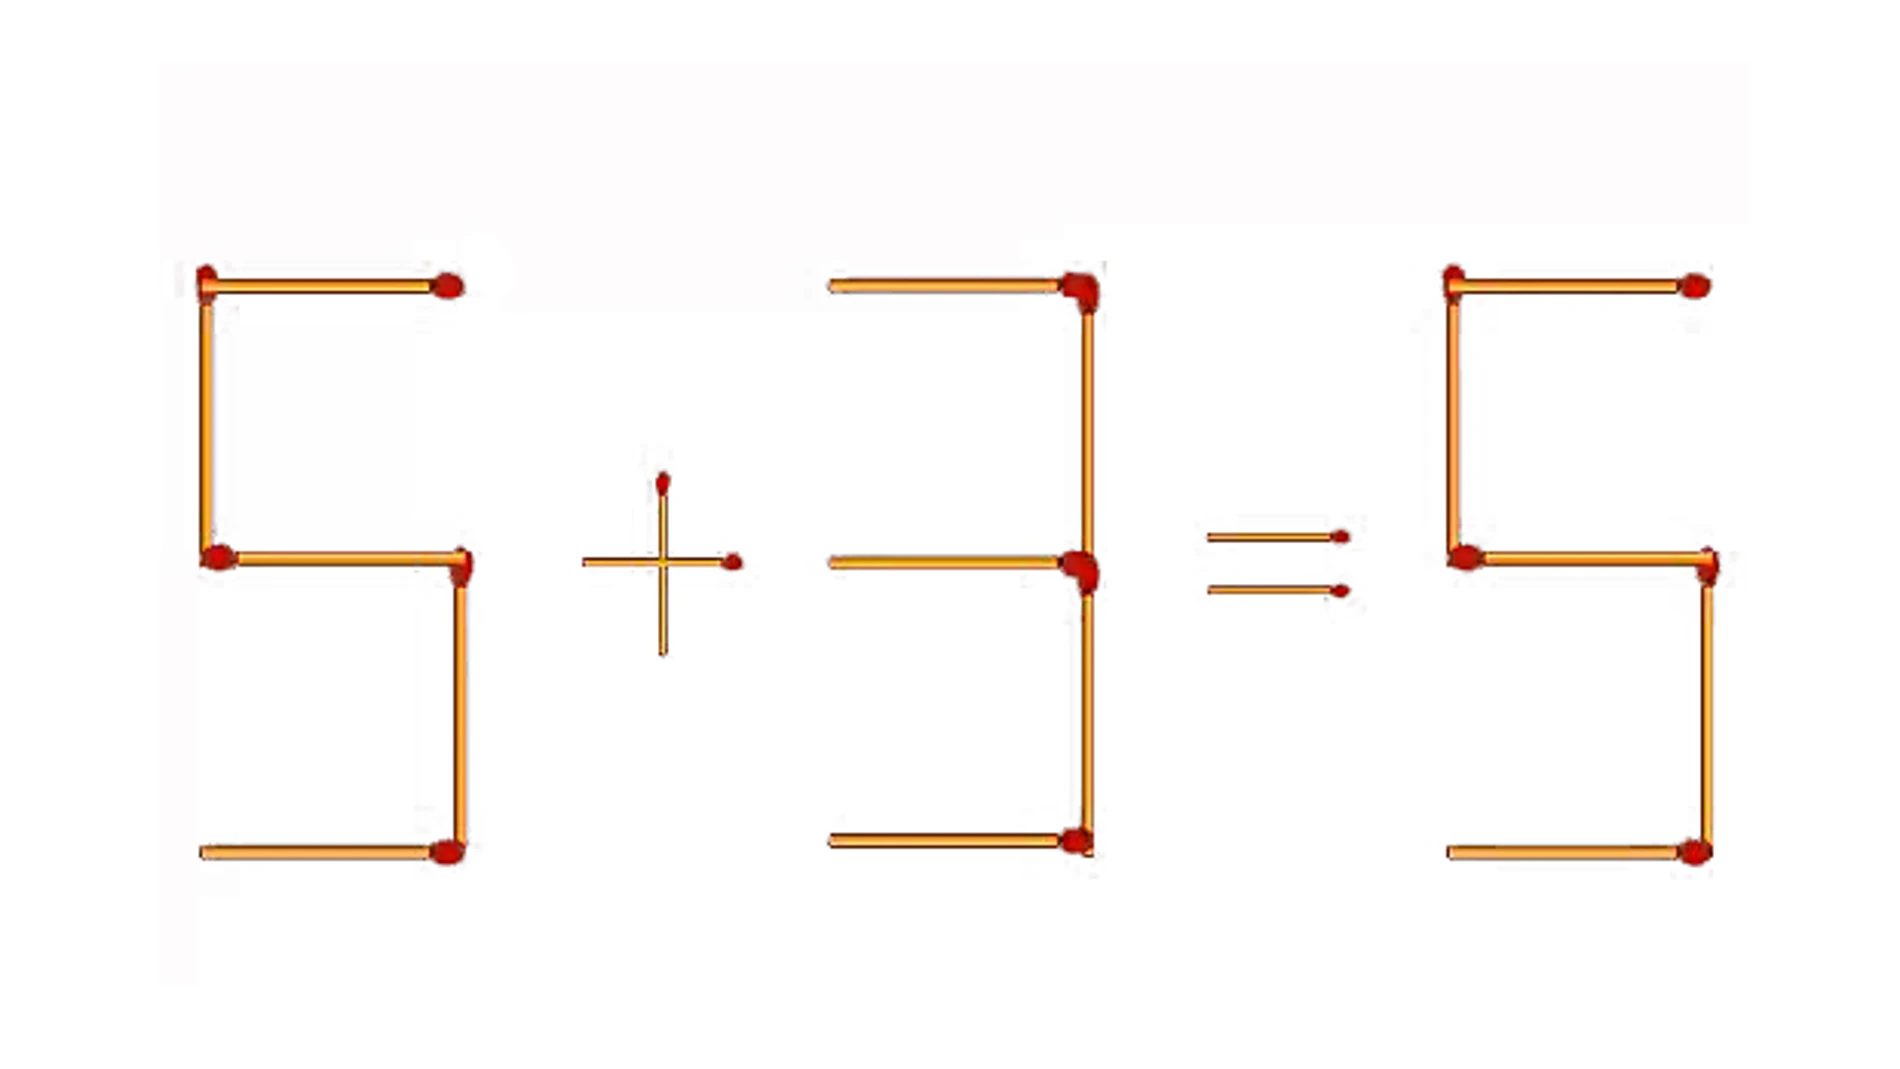 Este acertijo consiste en añadir dos cerillas para que la ecuación sea correcta